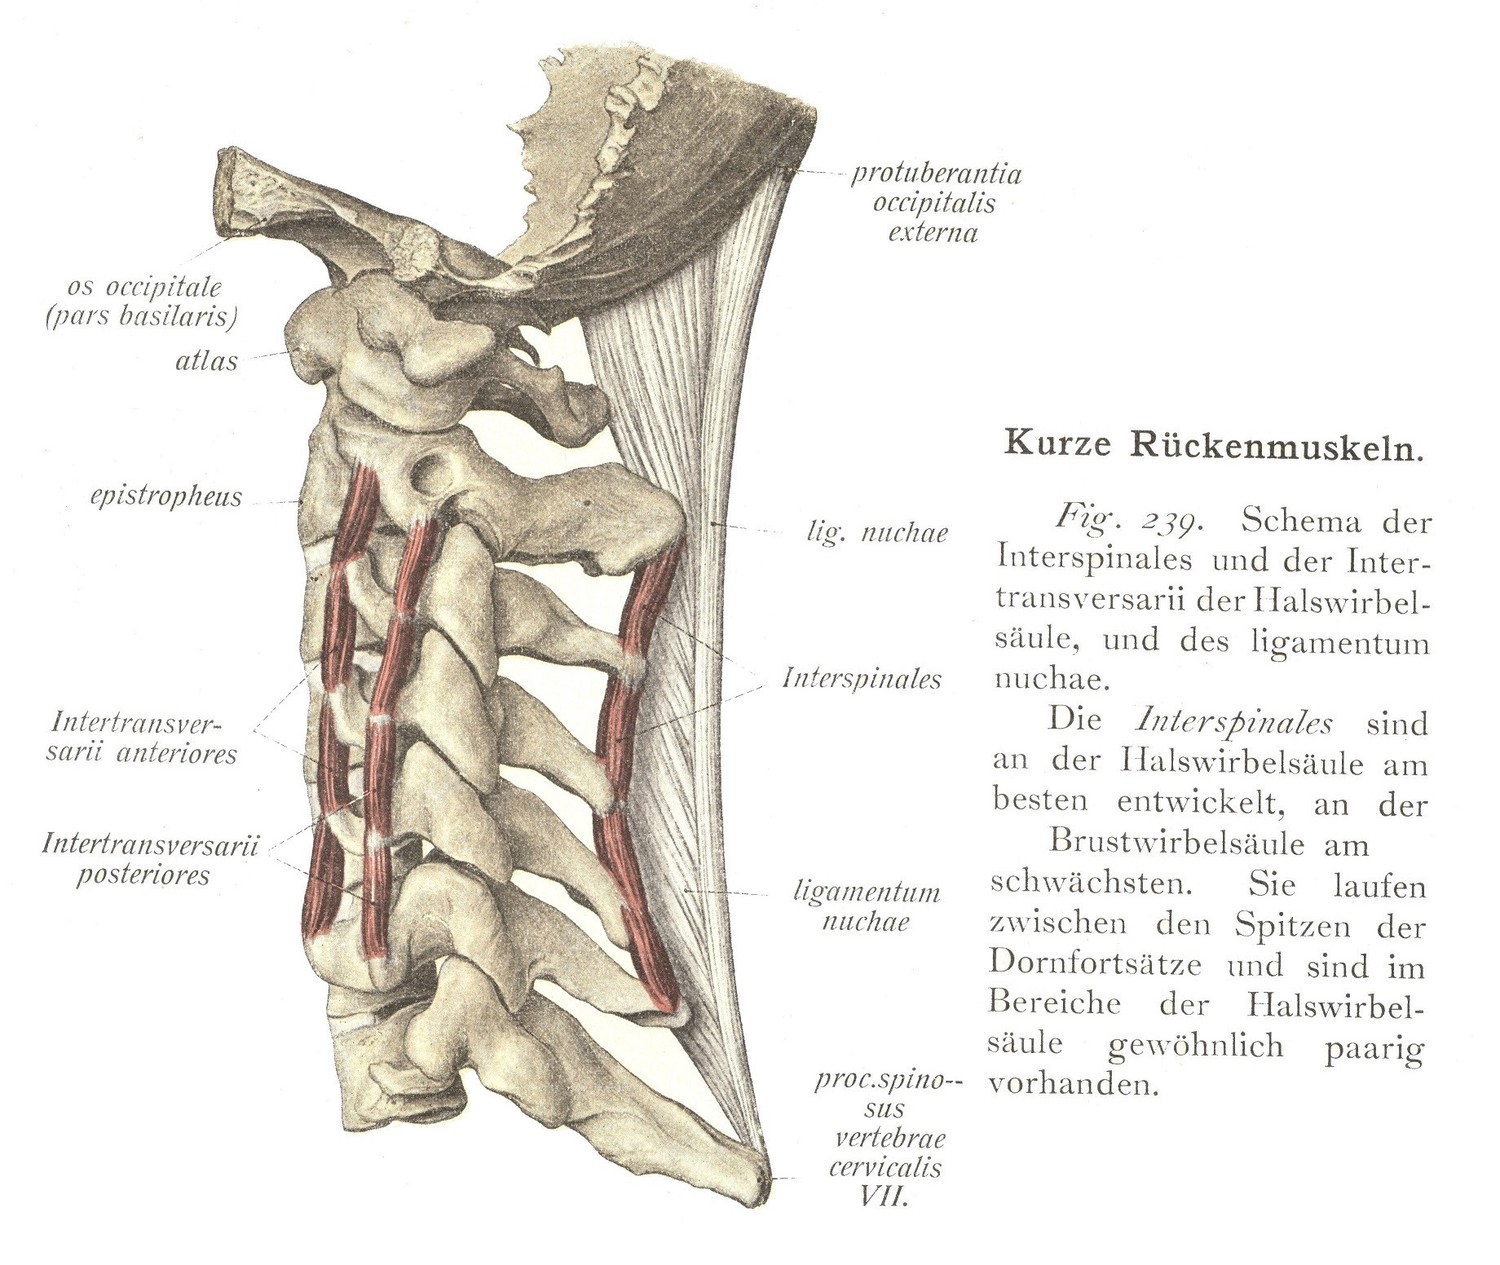 Schema der Interspinales und der Intertransversarii der Halswirbelsäule, und des ligamentum nuchae.